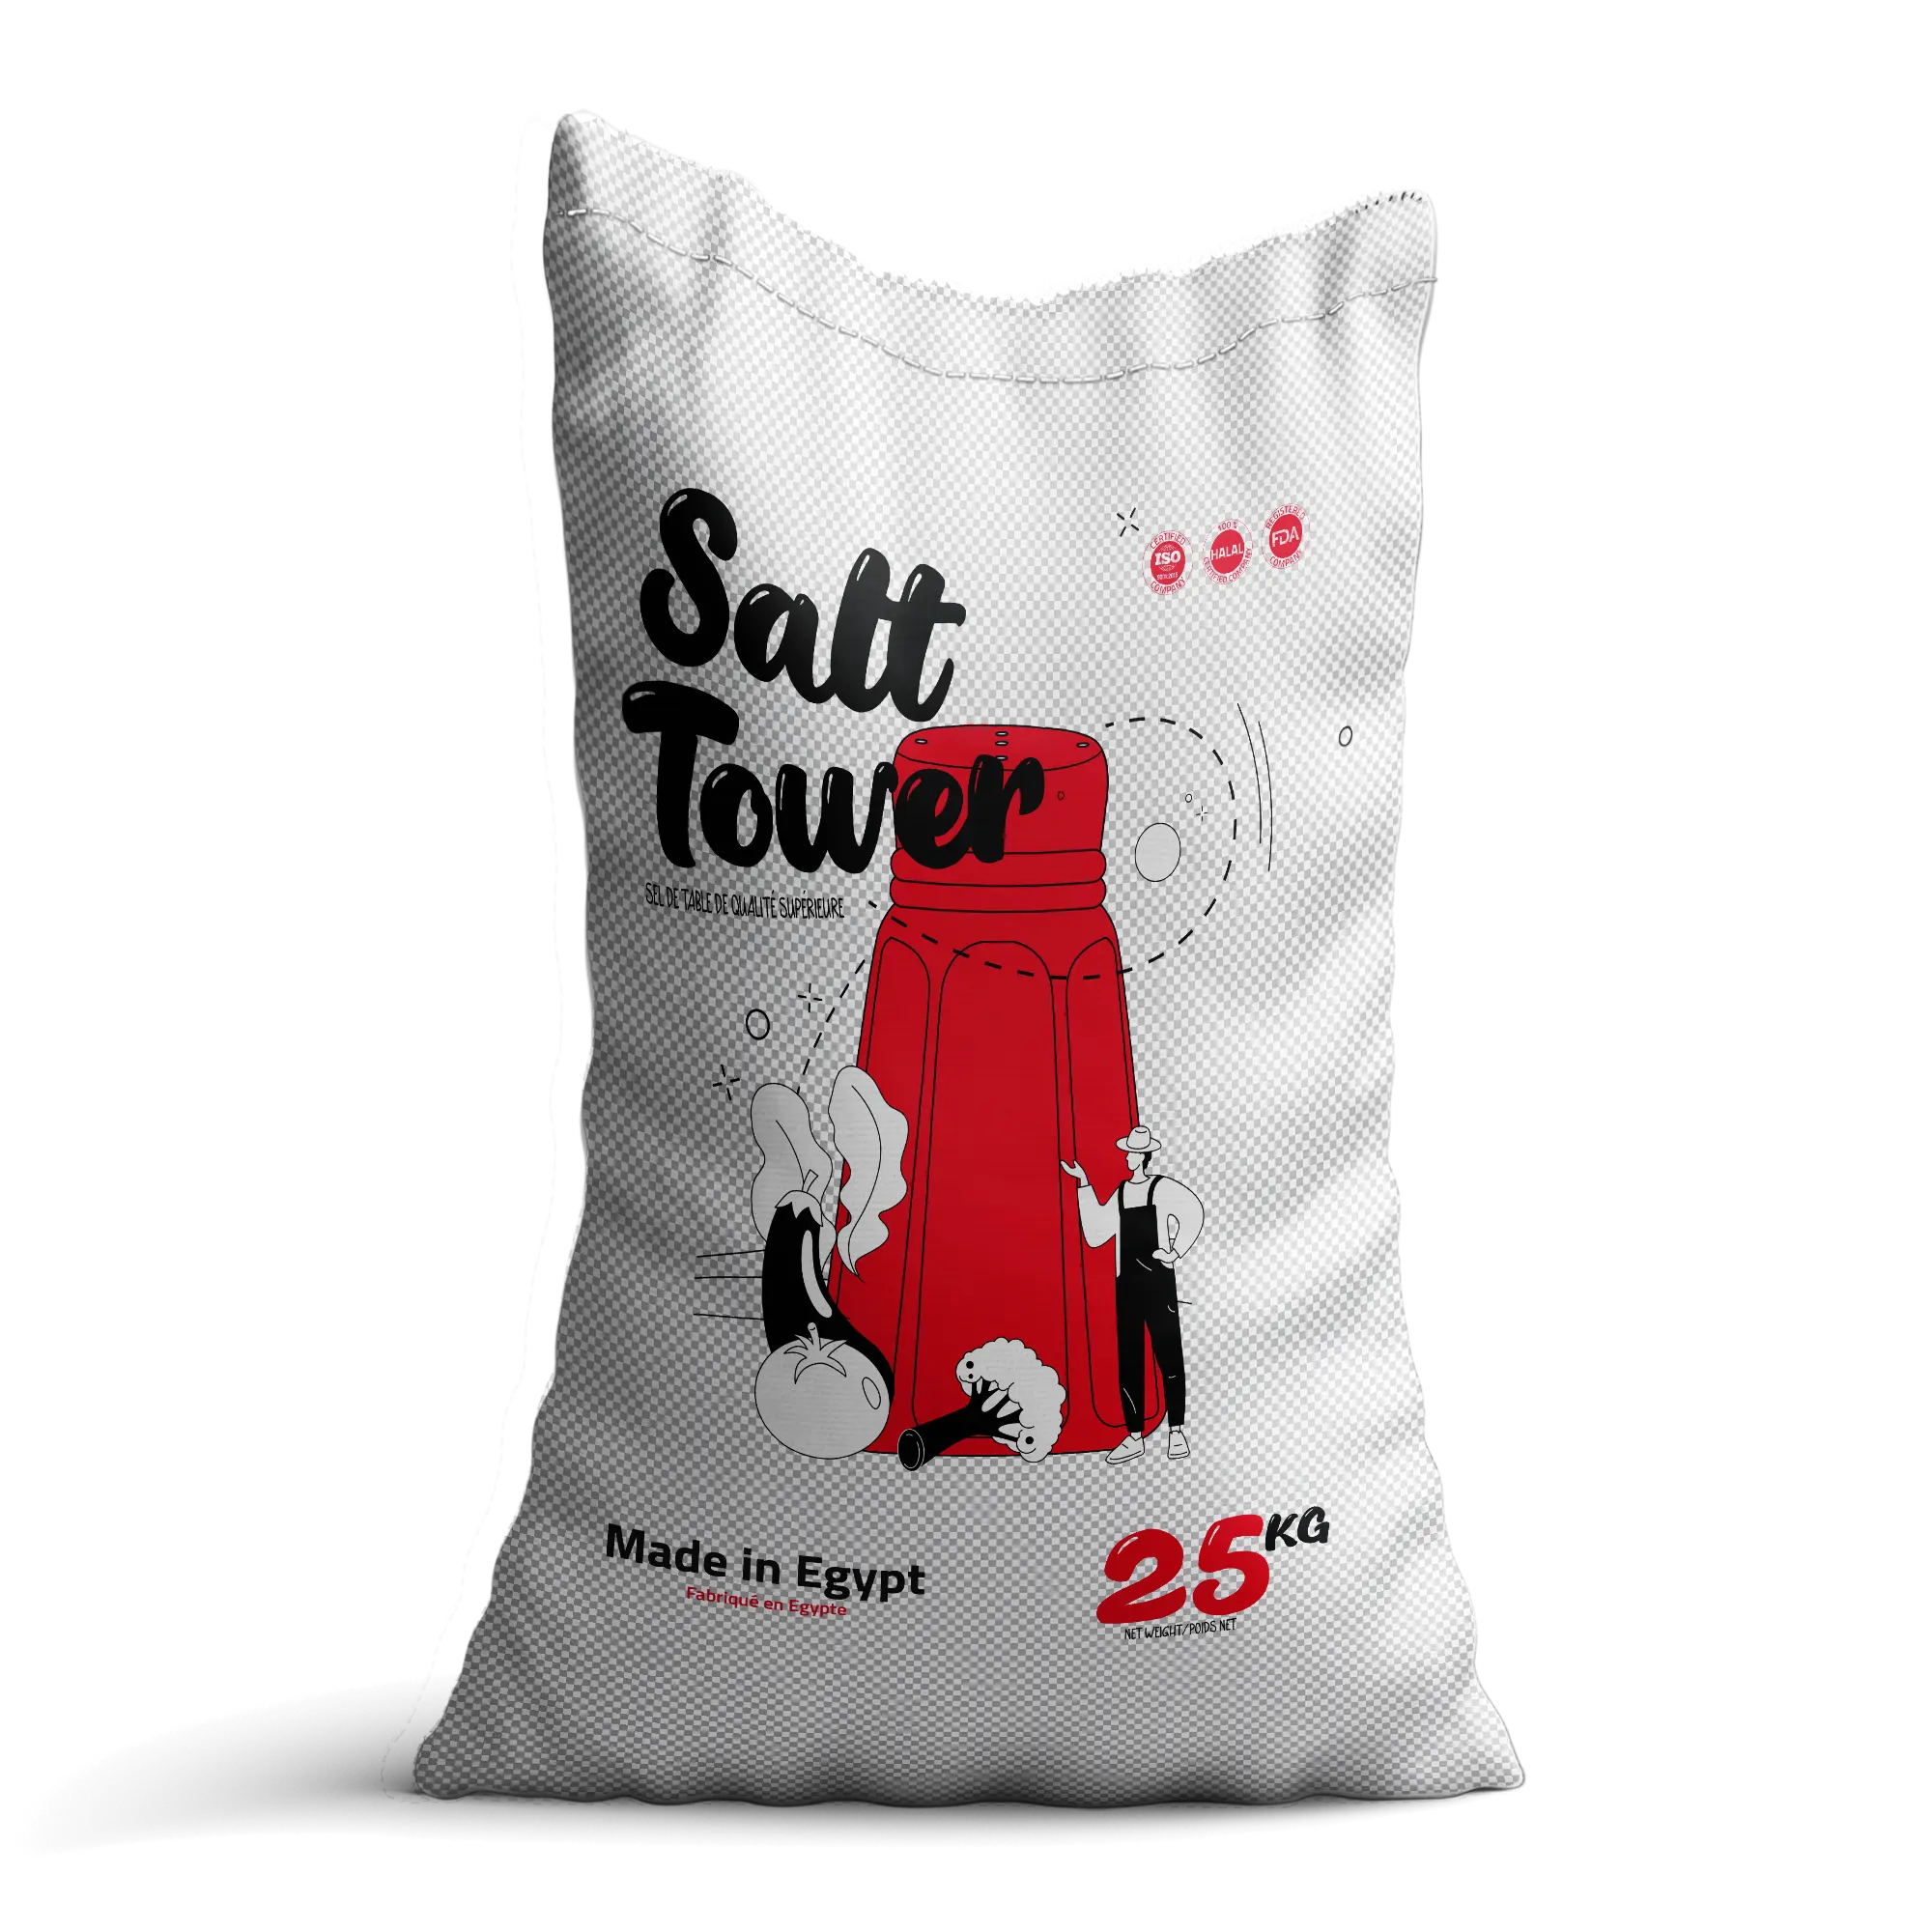 Yeni marka tuz kulesi 25kg yüksek kaliteli Siwa tuzu fabrika ihracat için hazır toplu yenebilir tuz